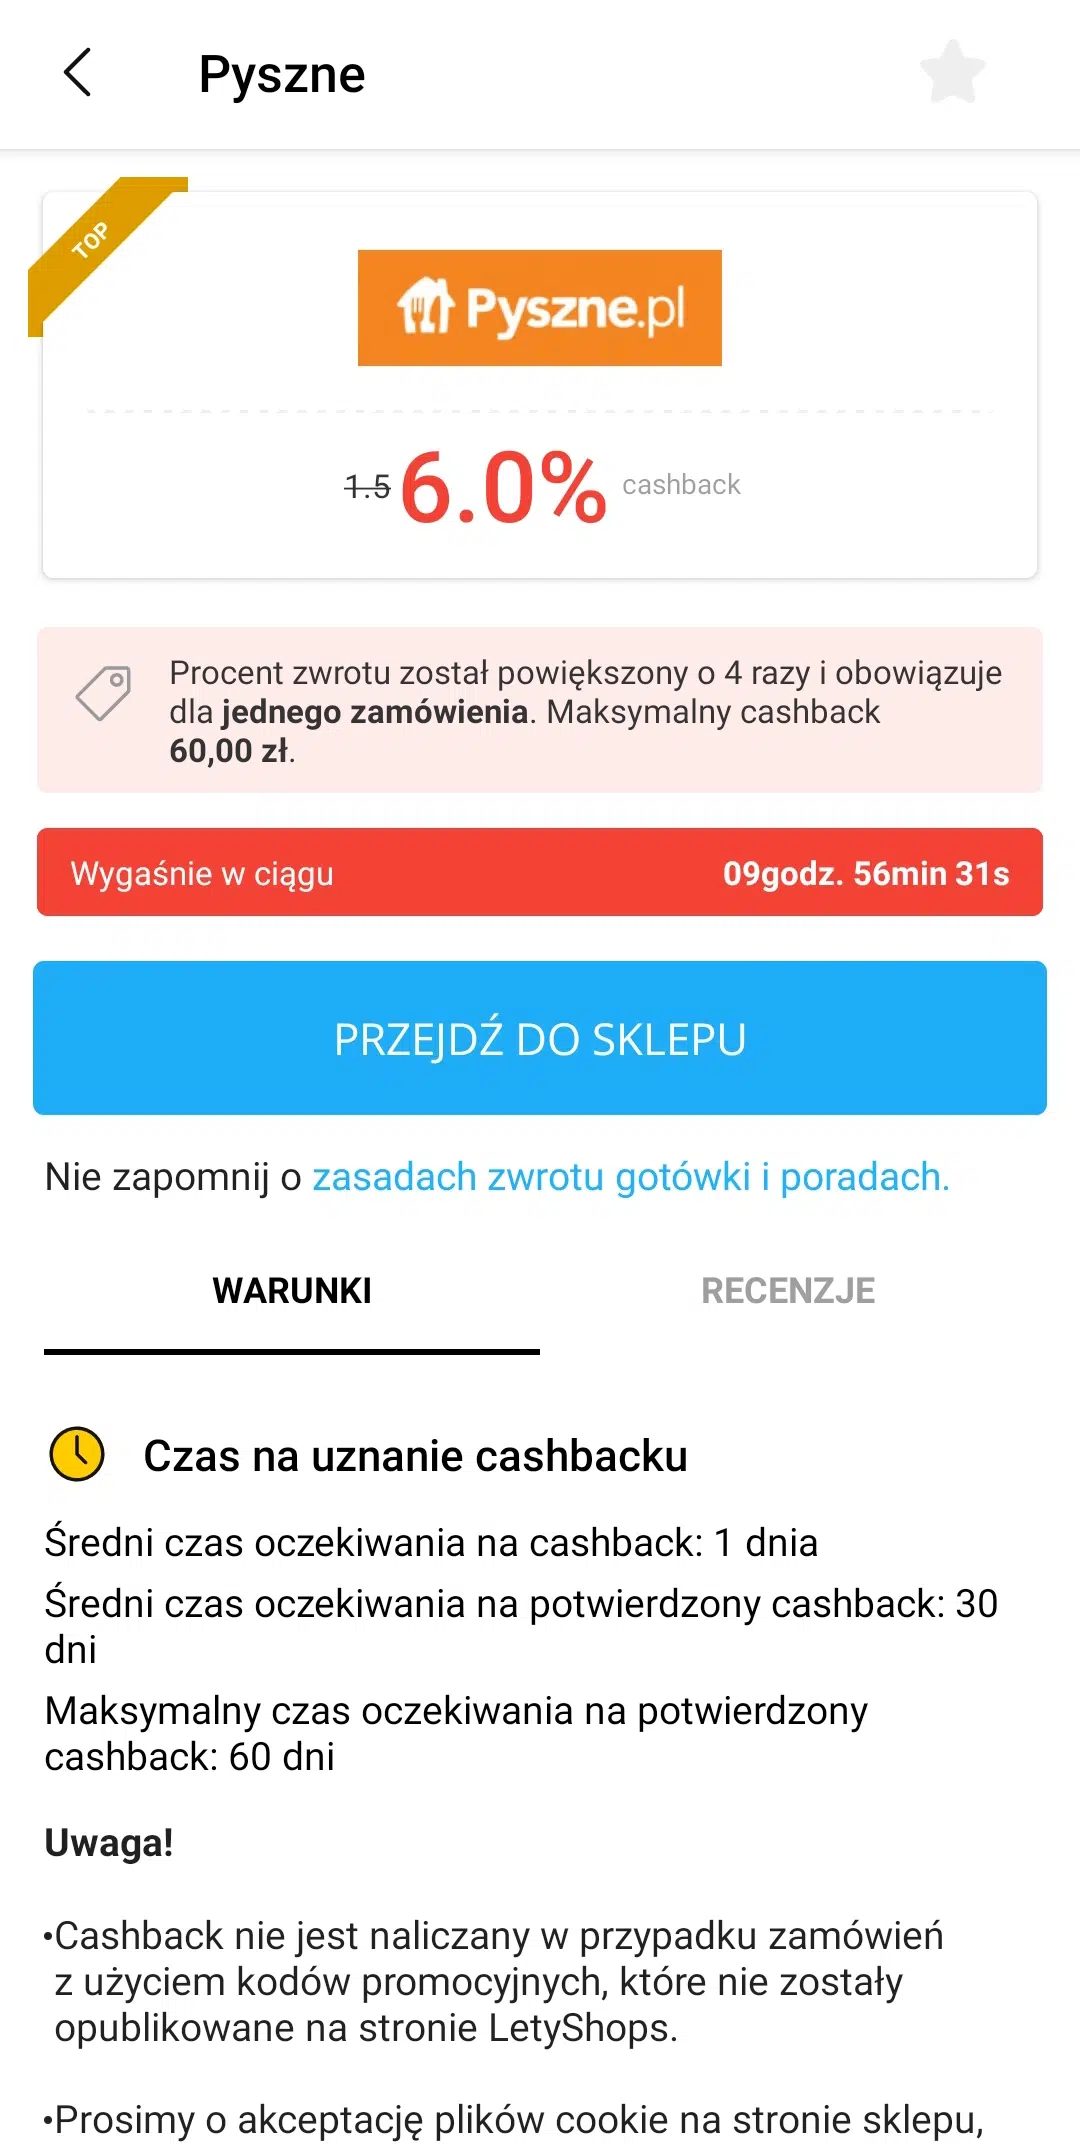 Przejście do Pyszne.pl z aplikacji Letyshops